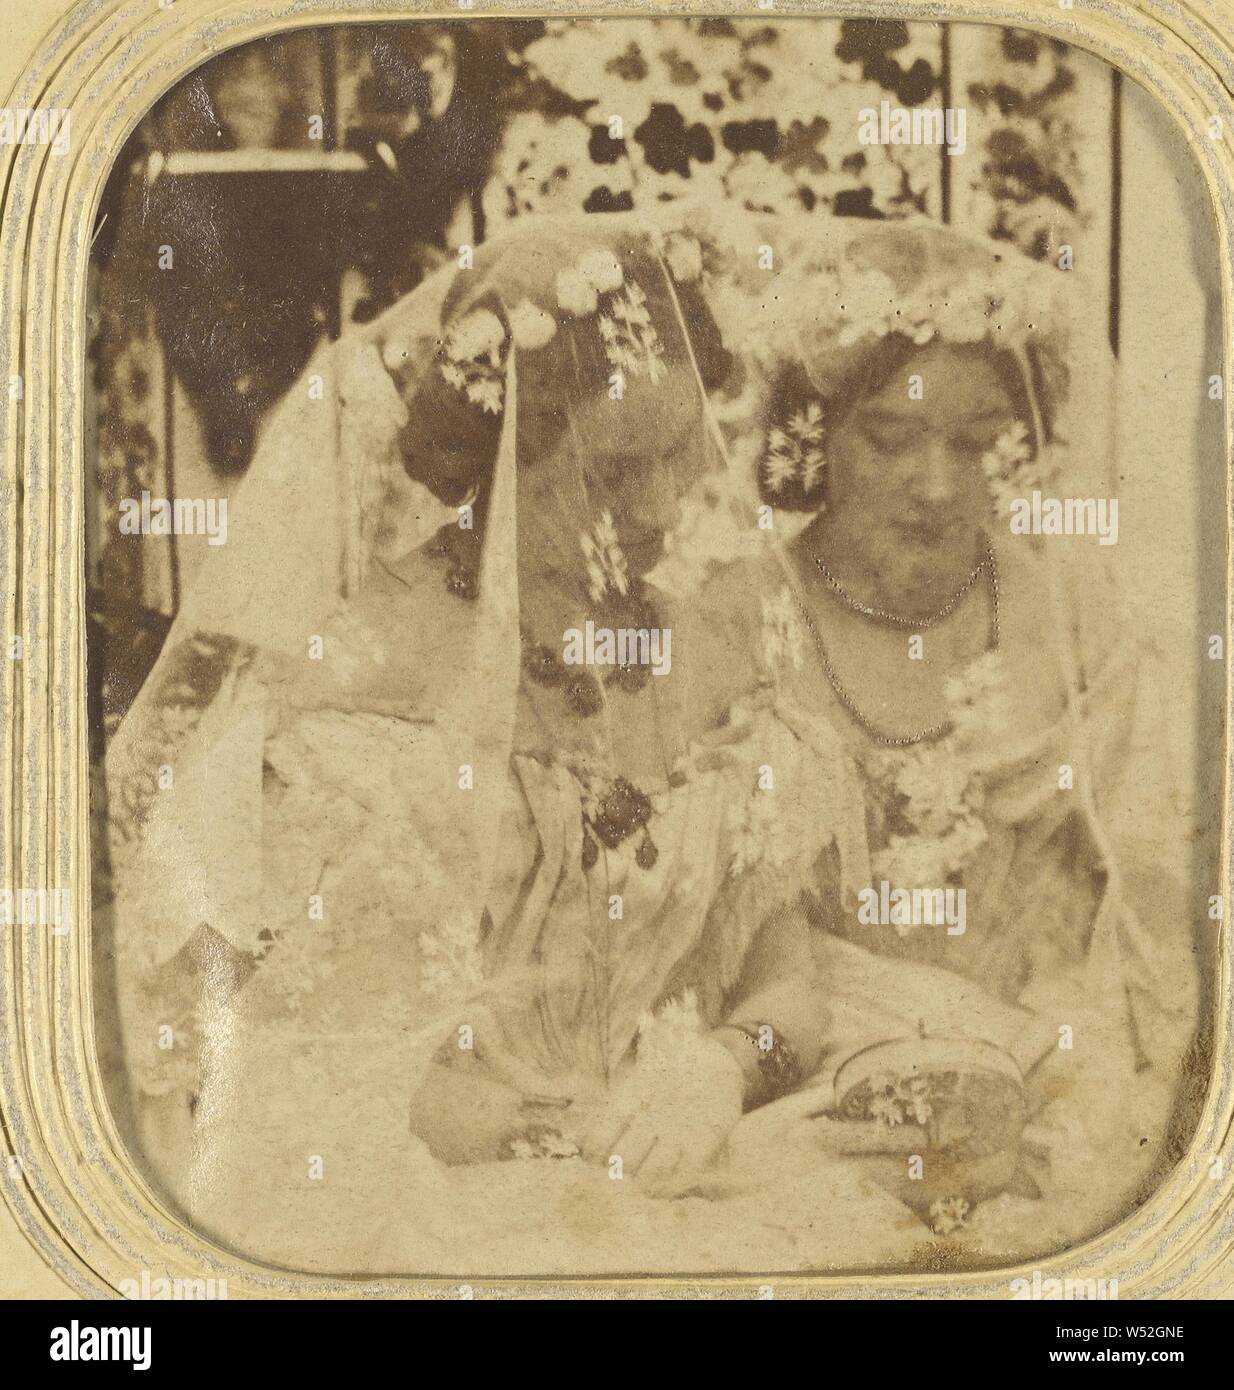 Zwei Frauen in Brautkleider, Unbekannt, 1855-1860, von Hand gefärbt Eiweiß silber Drucken Stockfoto